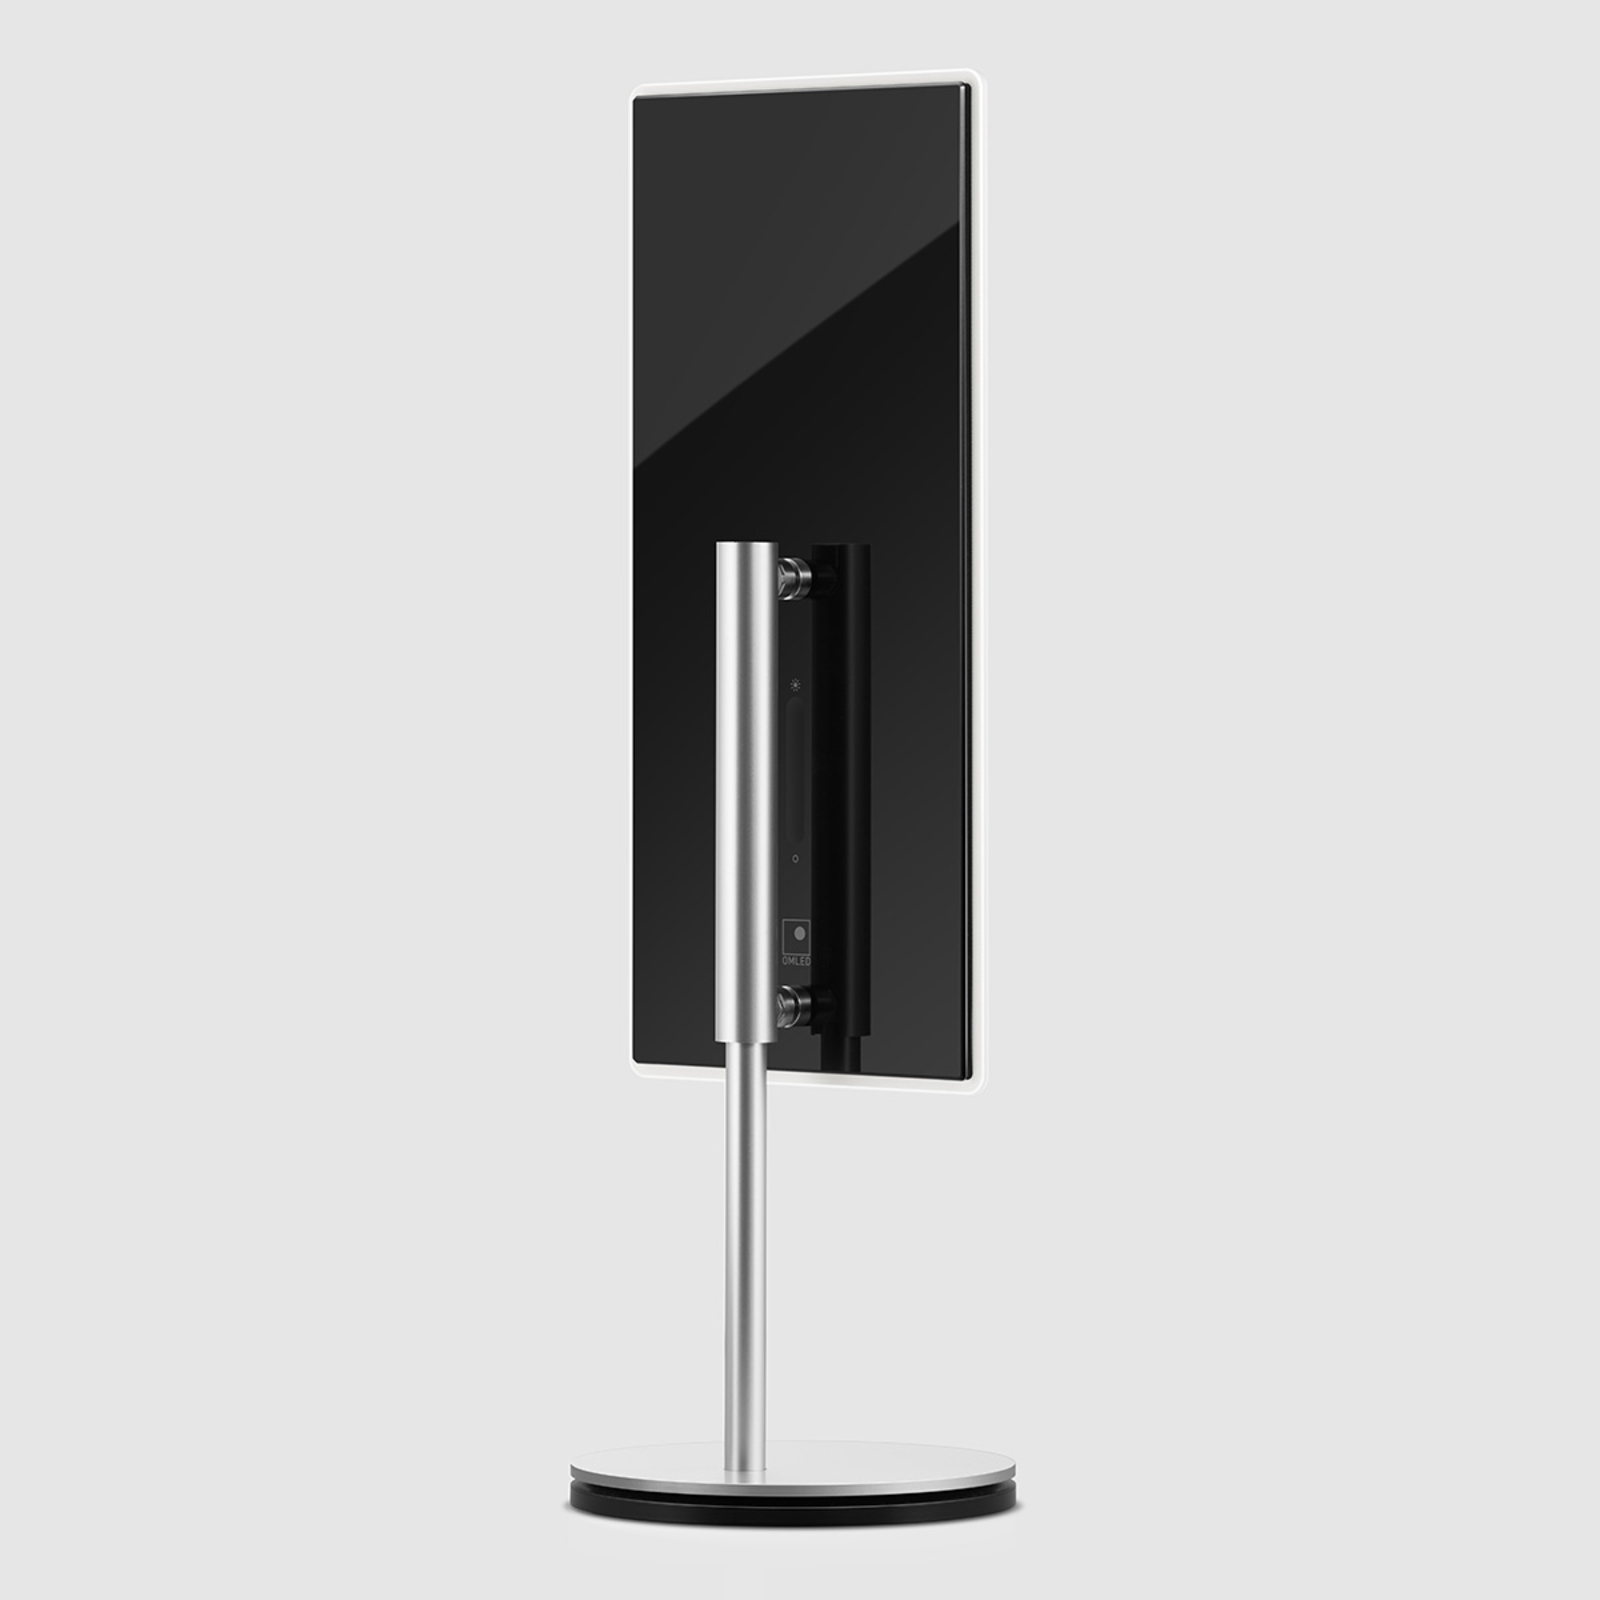 47,8 cm hohe OLED-Tischlampe OMLED One t2, schwarz